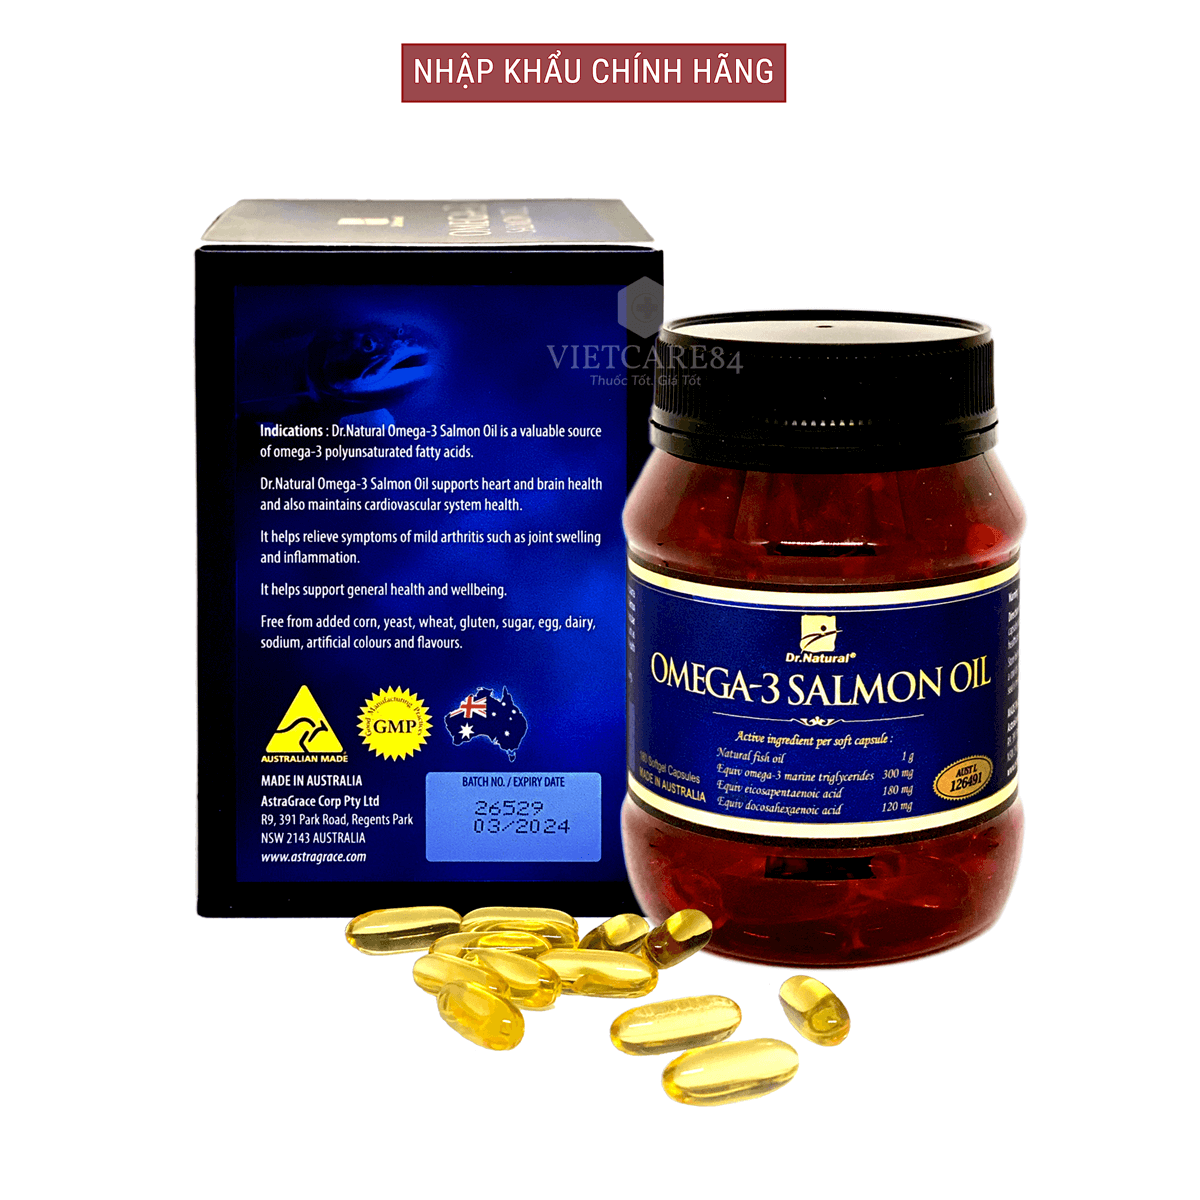 Viên uống Omega 3 dầu cá Hồi nhập khẩu chính hãng Úc OMEGA 3 SALMON OIL (180 viên) hỗ trợ giảm mỡ máu, giảm nguy cơ xơ vữa động mạch, cung cấp các chất dinh dưỡng cần thiết cho não bộ, tốt cho mắt